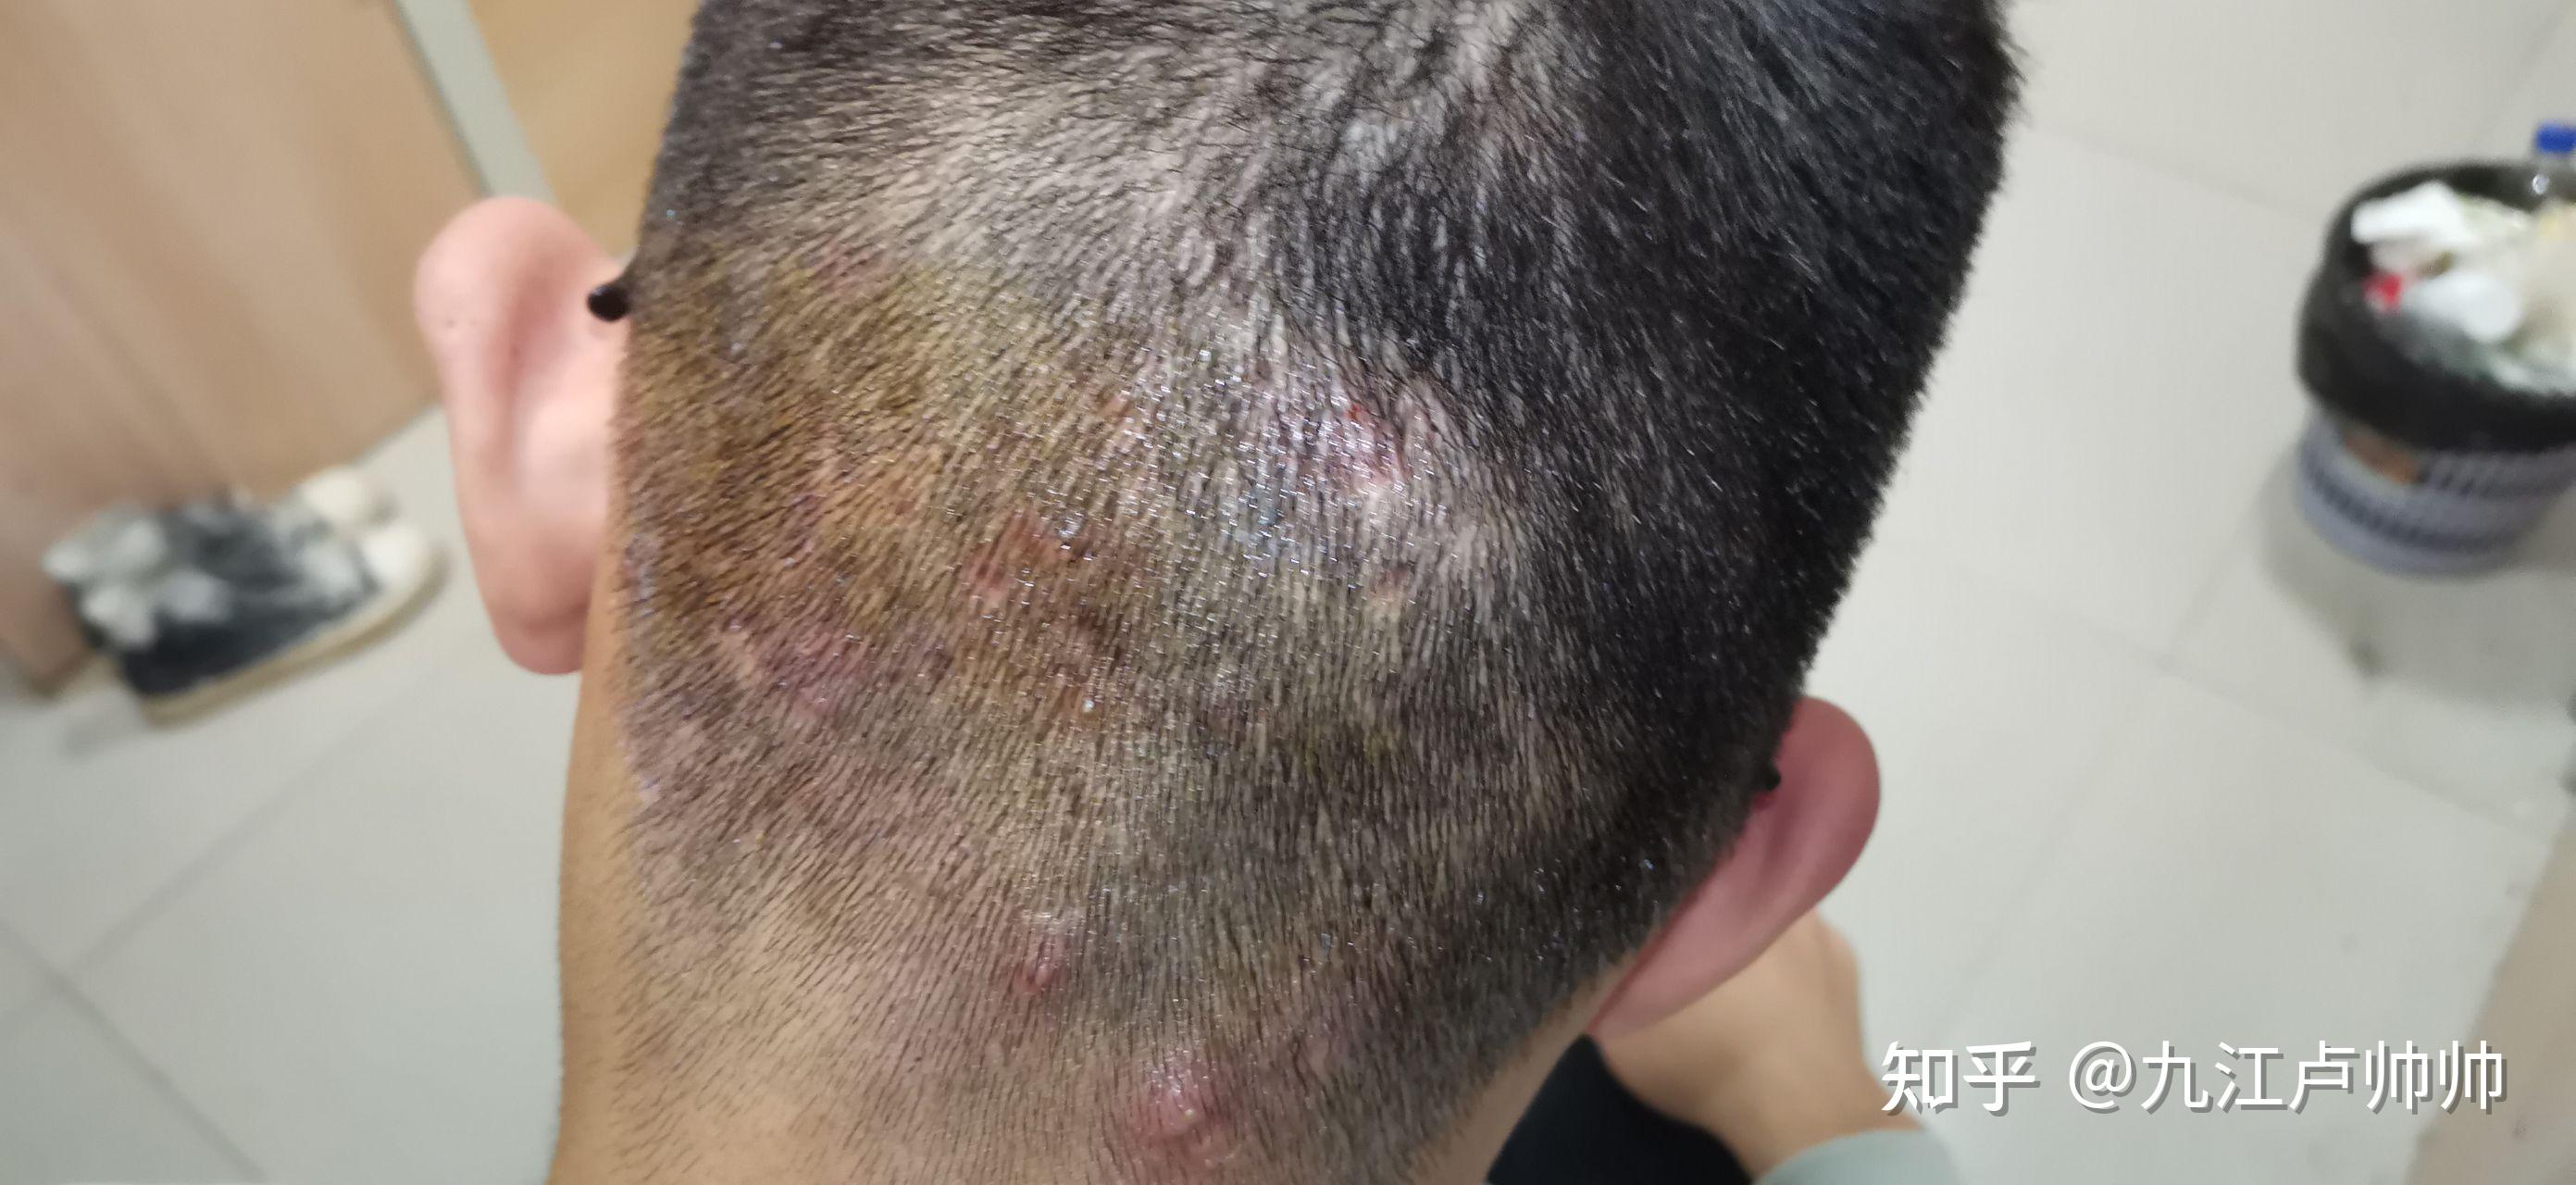 马拉色菌毛囊炎的治愈全过程（亲身经历）图片可能引起不适请谨慎观看 - 知乎